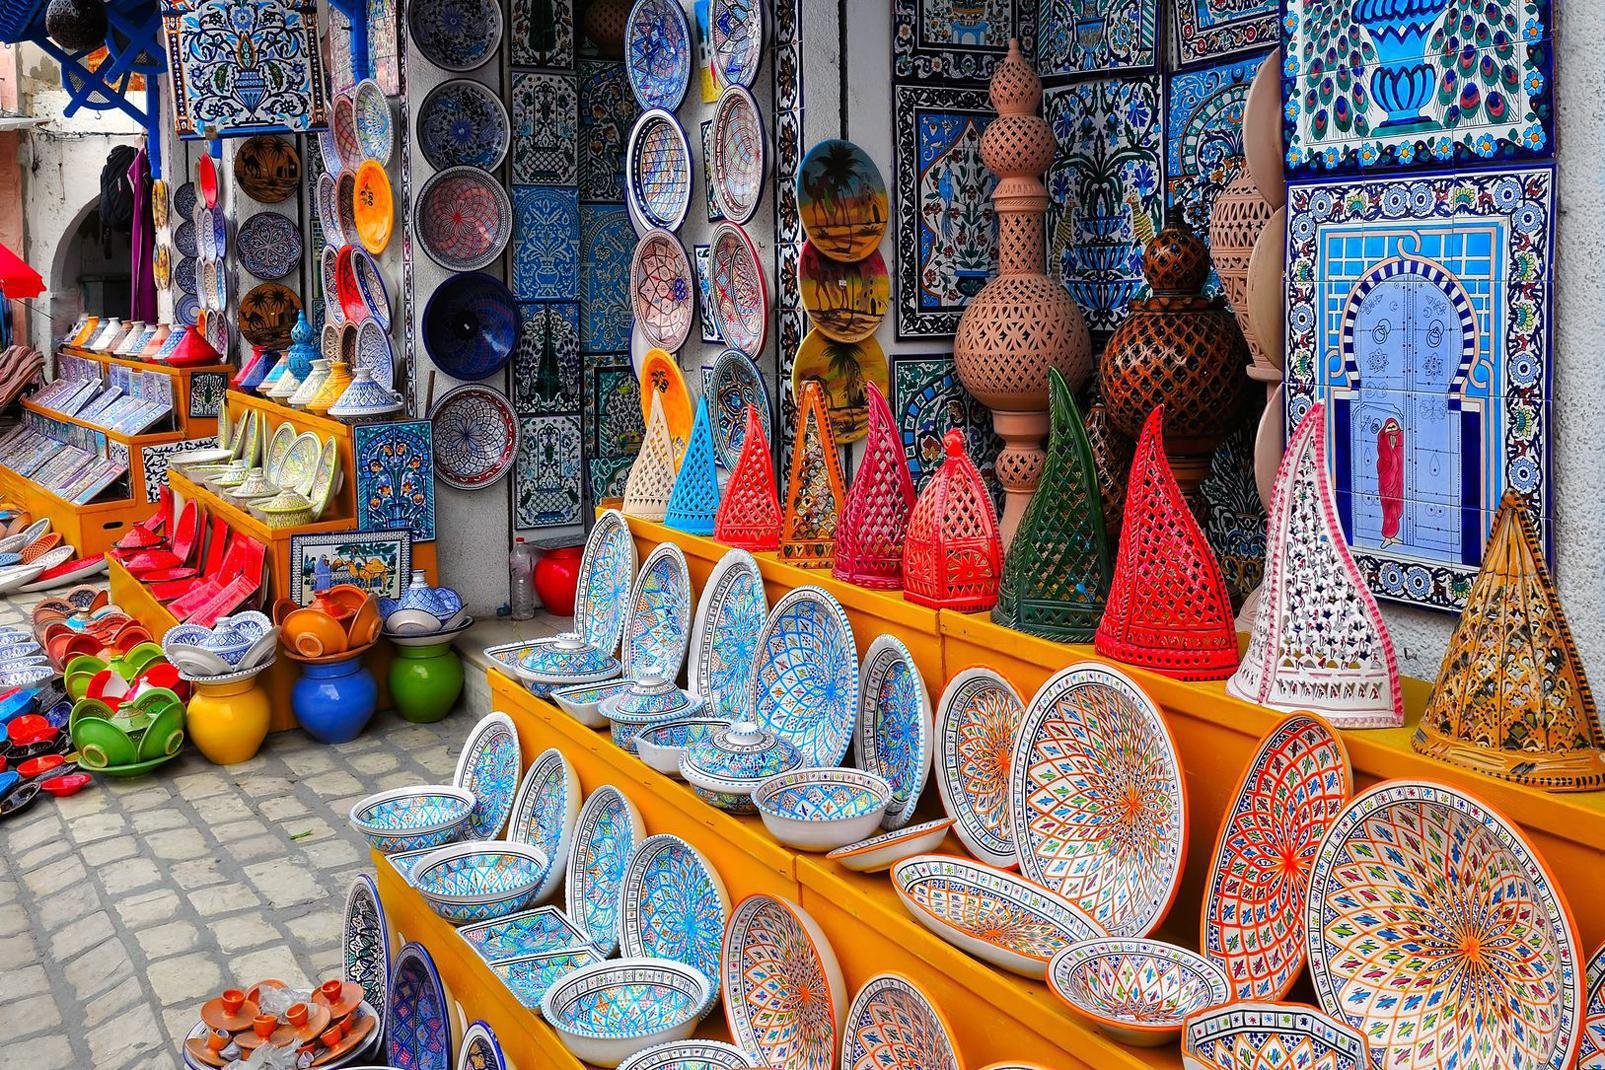 Moins connue que sa voisine Hammamet, Nabeul est une station balnéaire pleine de charme sur la côte ouest tunisienne. On n'y fait pas la fête jusqu'à l'aube, mais on apprécie son caractère sympathique, ses clubs familiaux et ses plages peu fréquentées.
Nabeul est aussi un centre d'artisanat réputé : on peut s'y procurer de très belles poteries et des objets décoratifs en cuir et en métal. Et si l'on ...